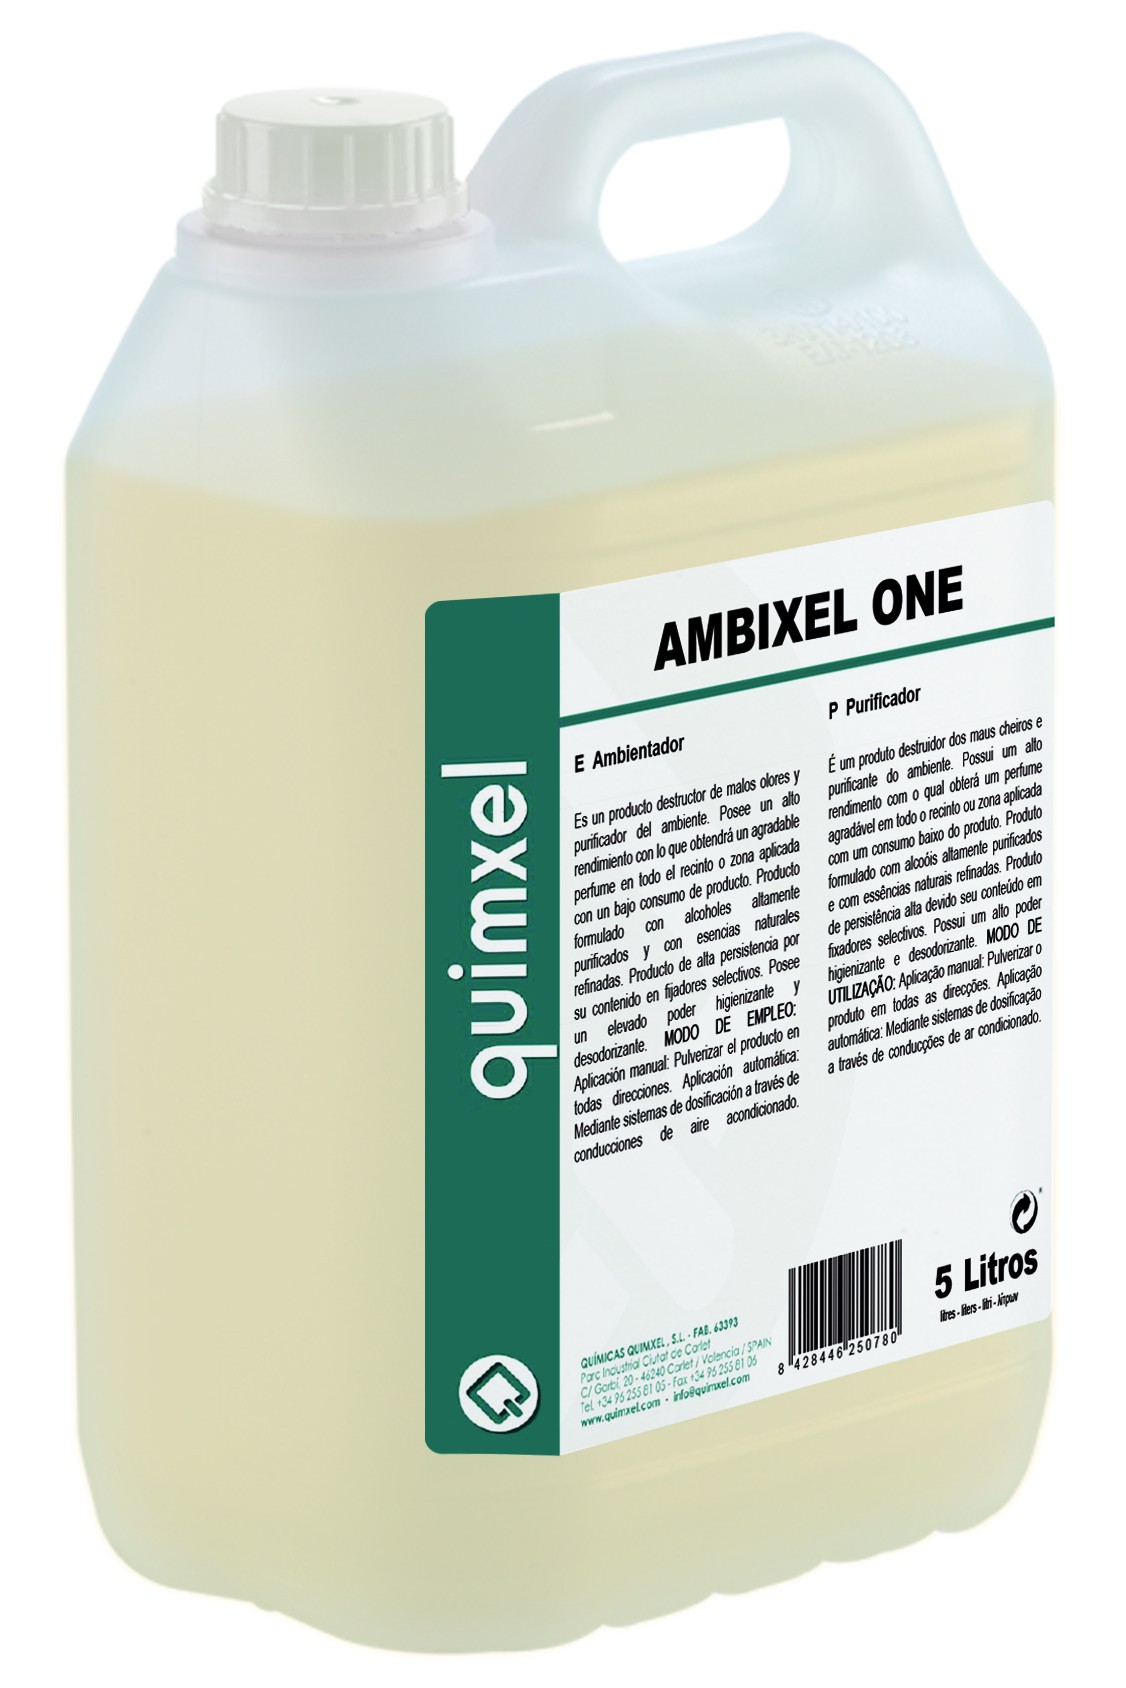 Ambientador Perfume, Ambixel One 750ml, 5L y 20L